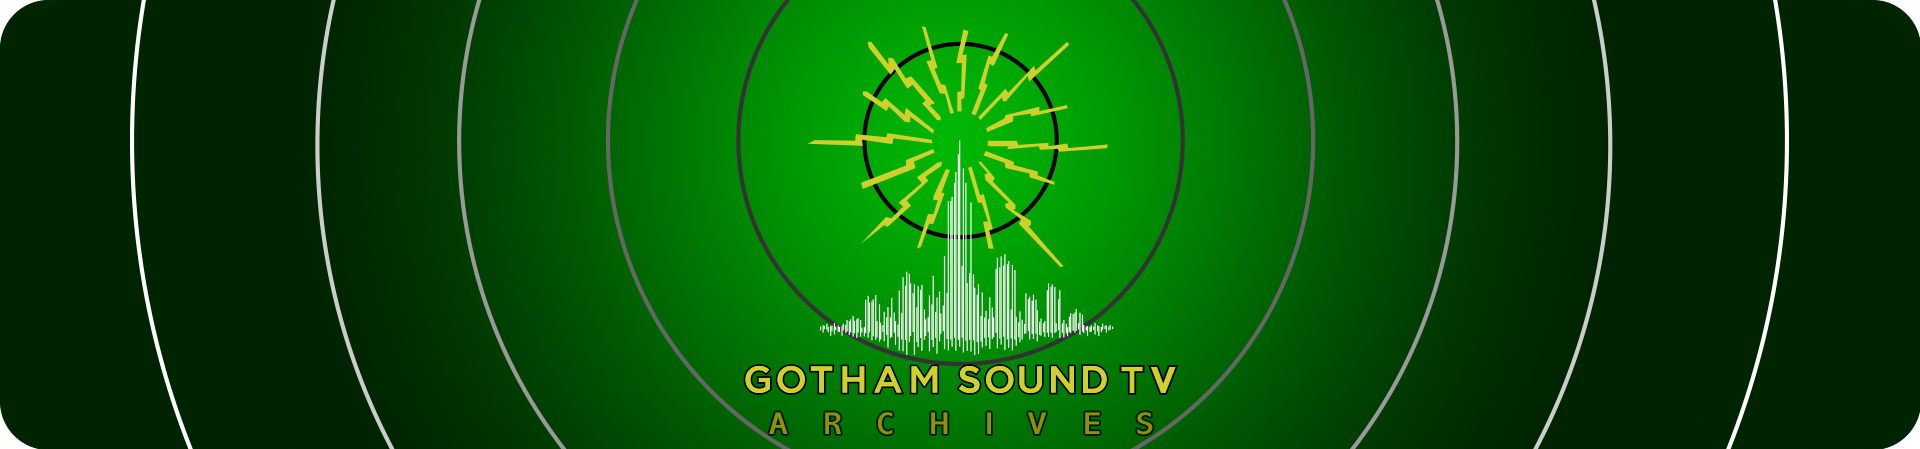 Gotham Sound TV Archives